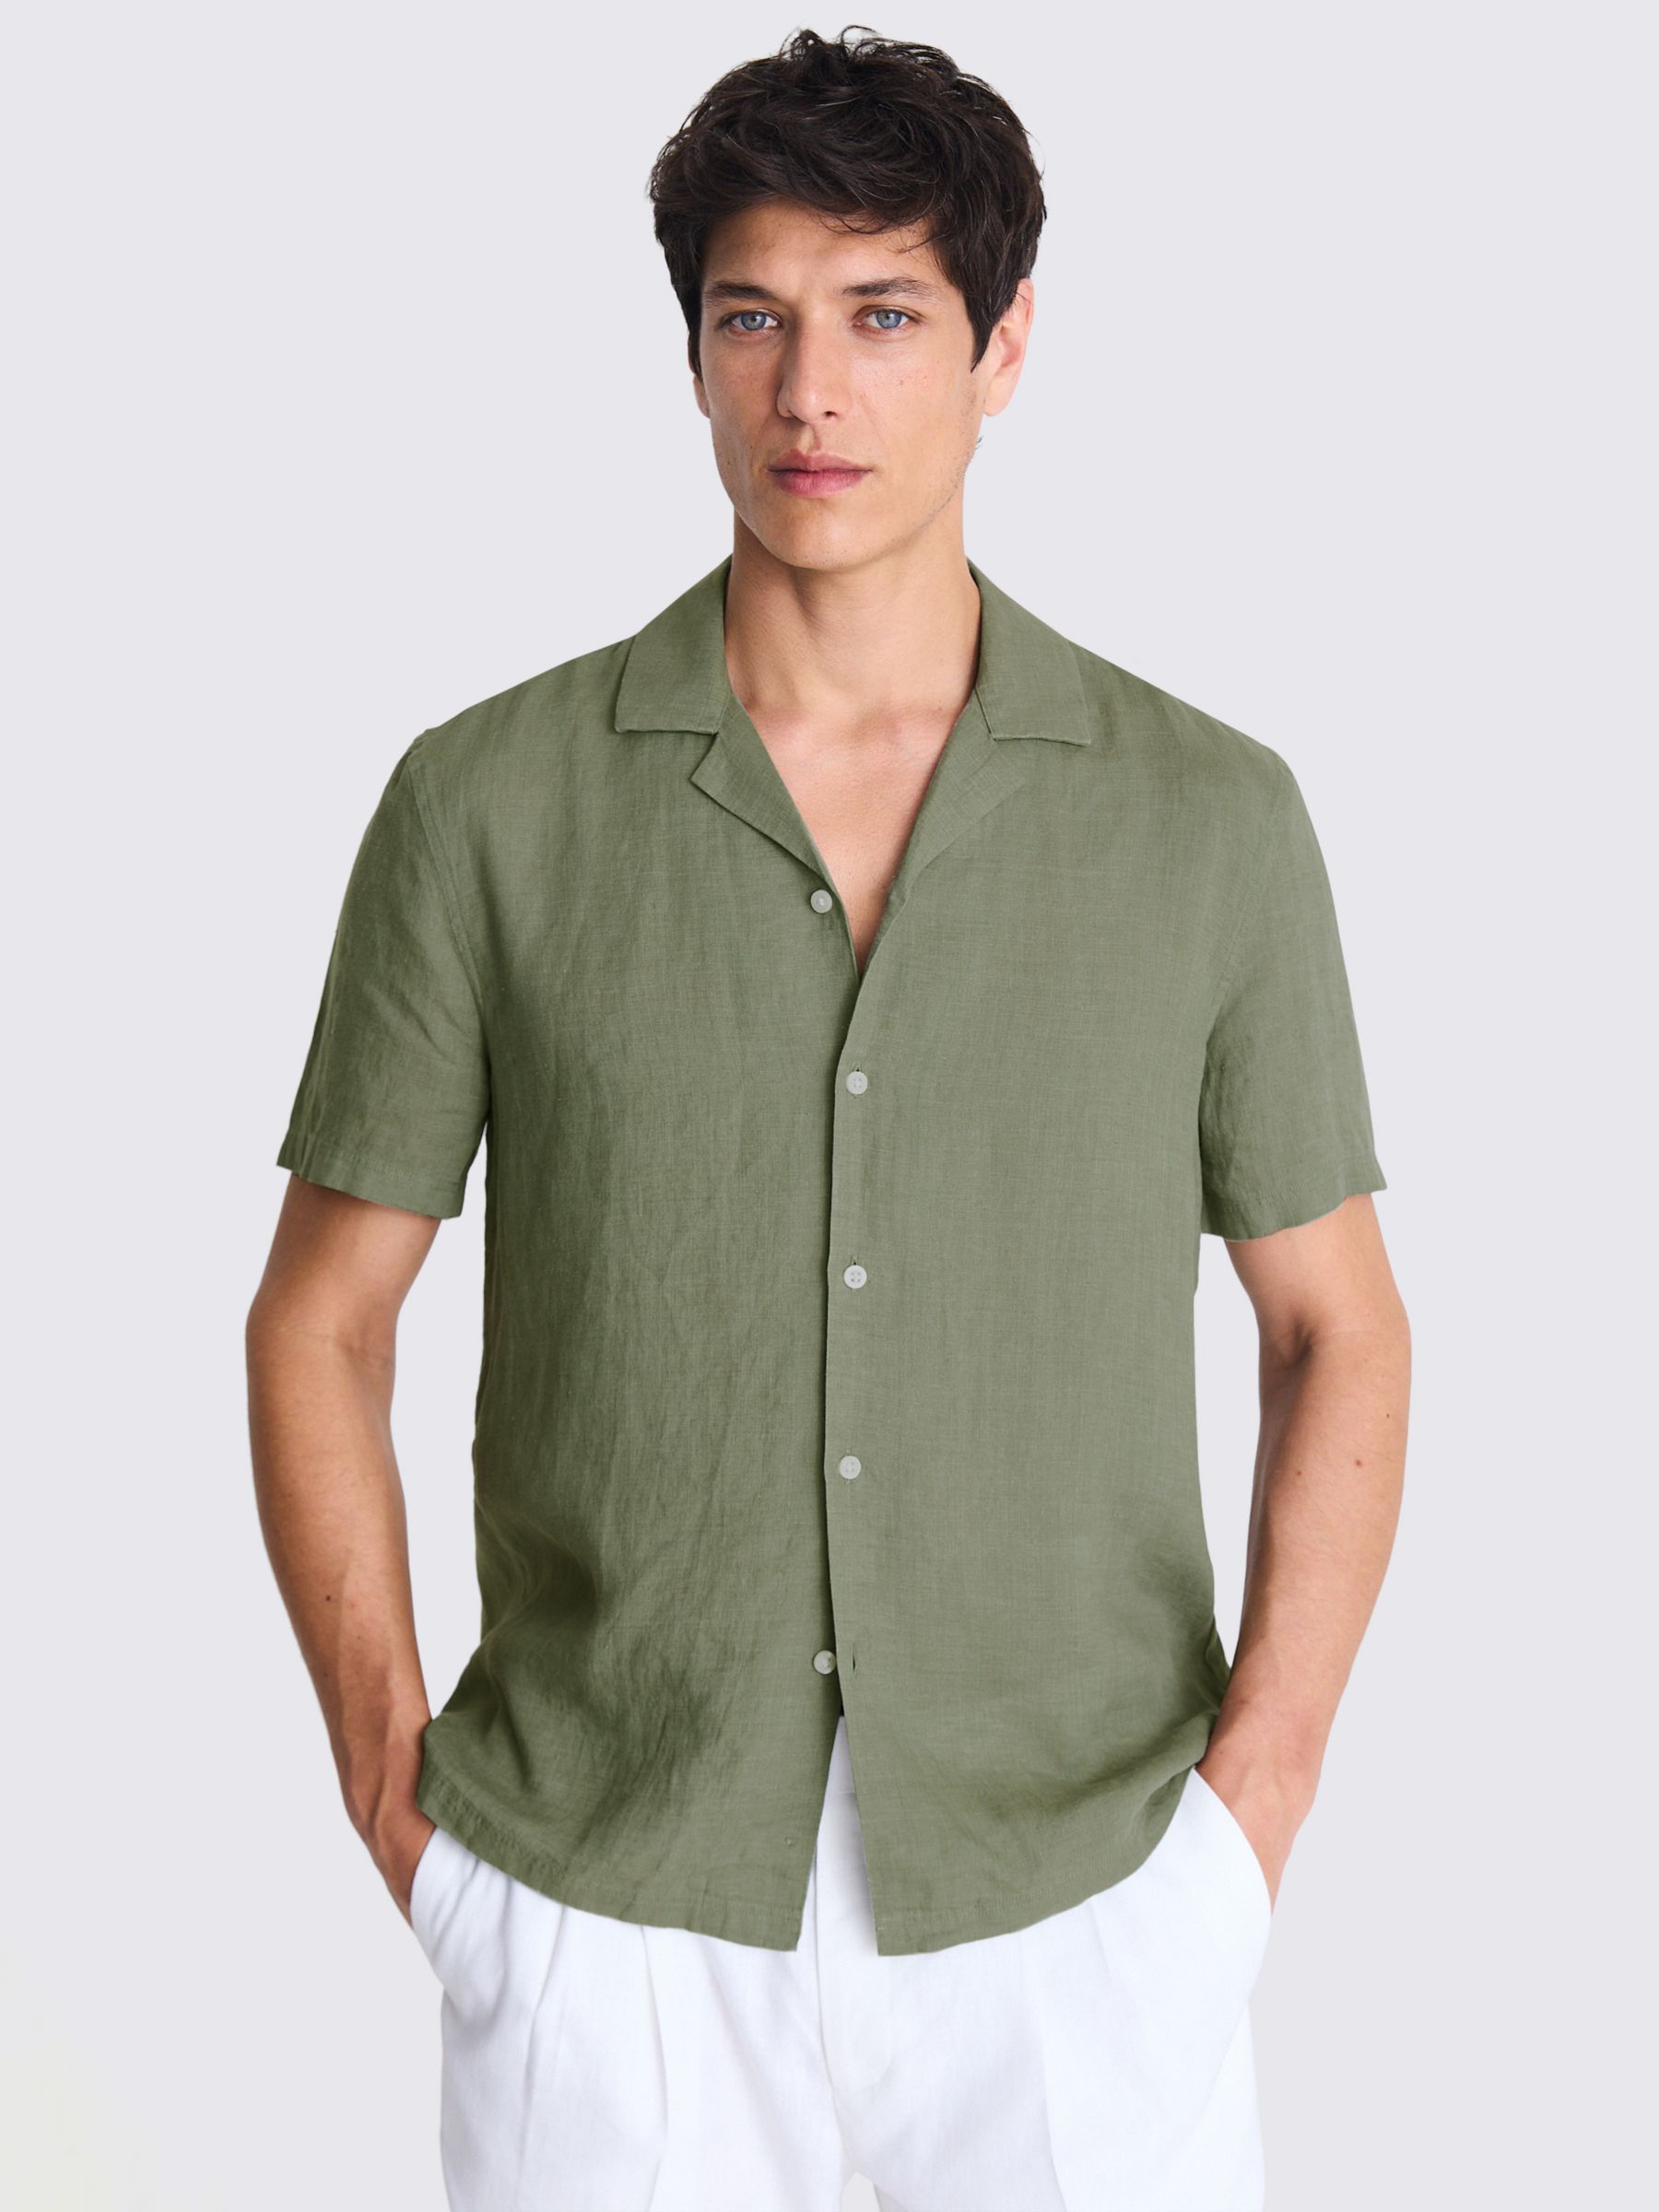 Moss Linen Cutaway Collar Shirt, Green, S